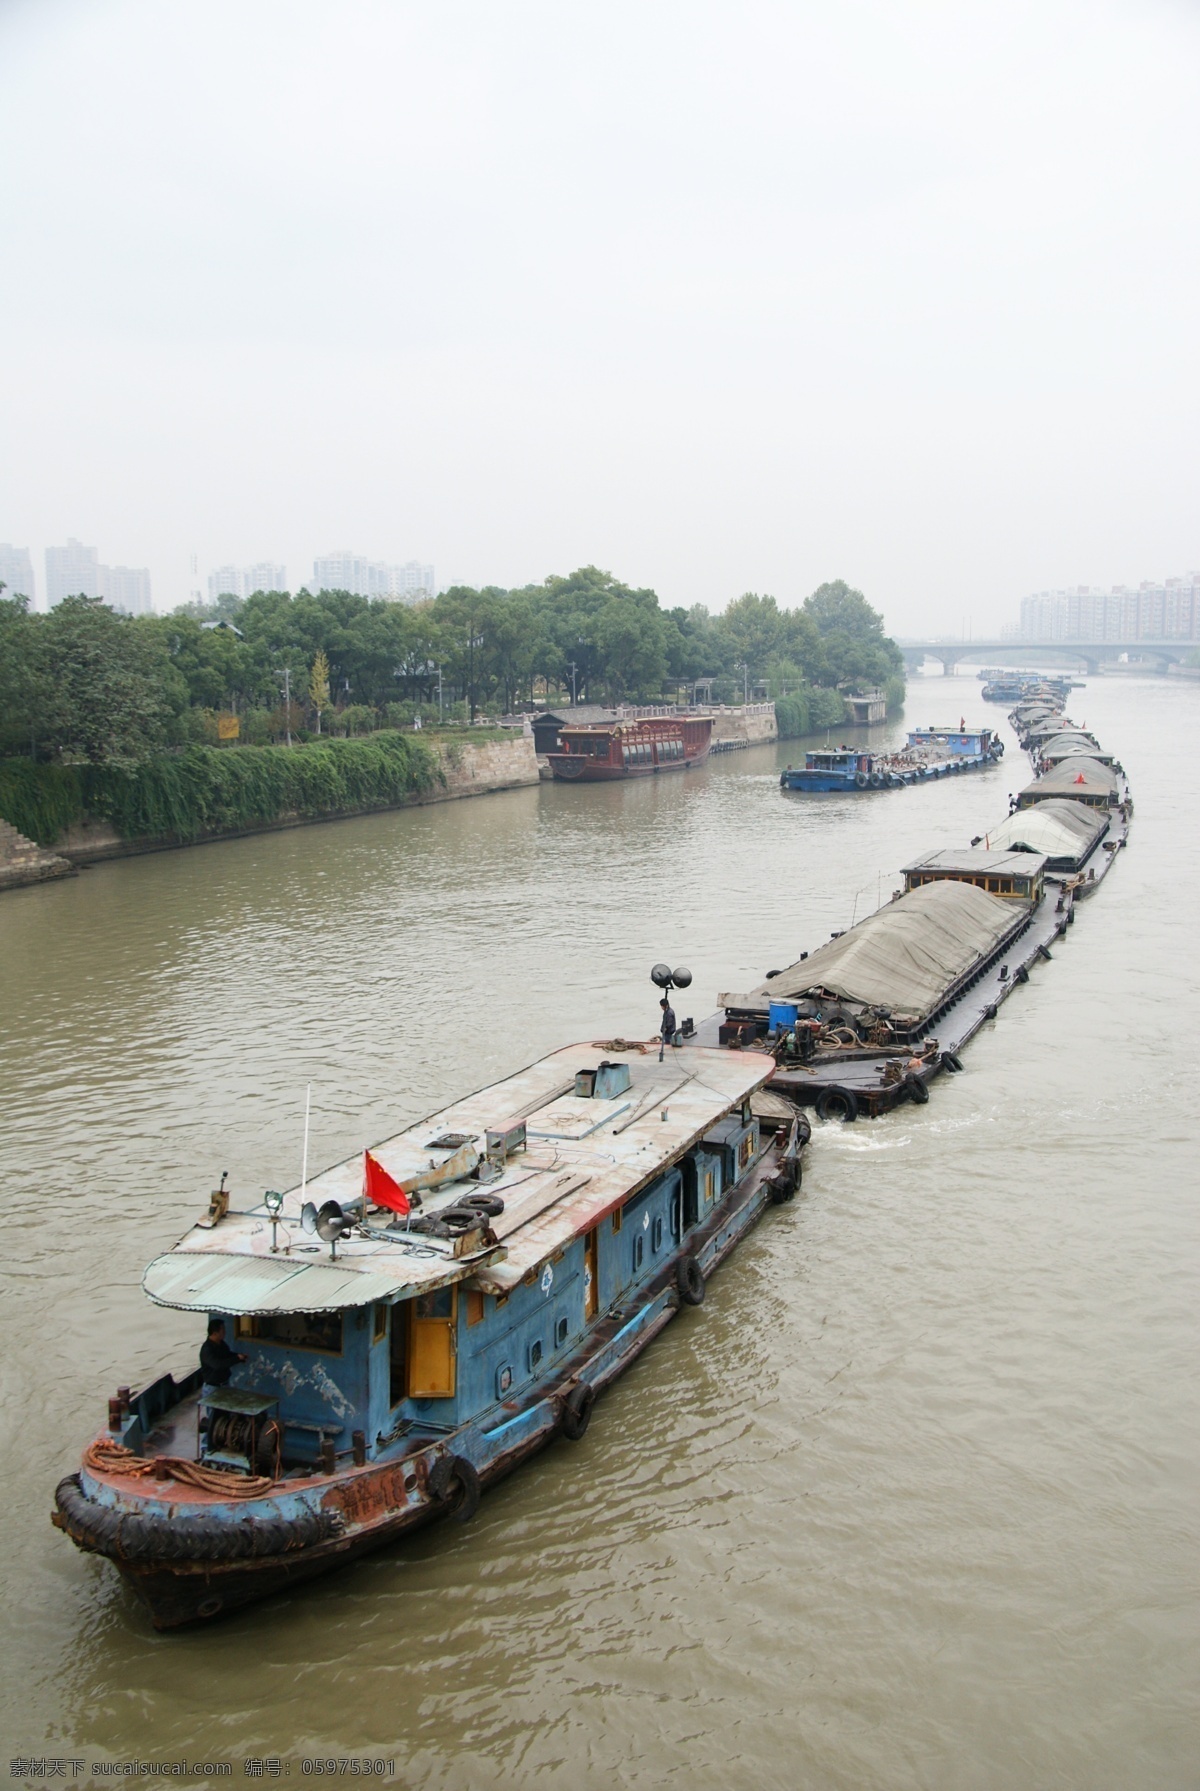 大运河船队 大运河 京杭运河 船运 船队 航运 繁忙 运输 轮机船 拱桥 旅游摄影 国内旅游